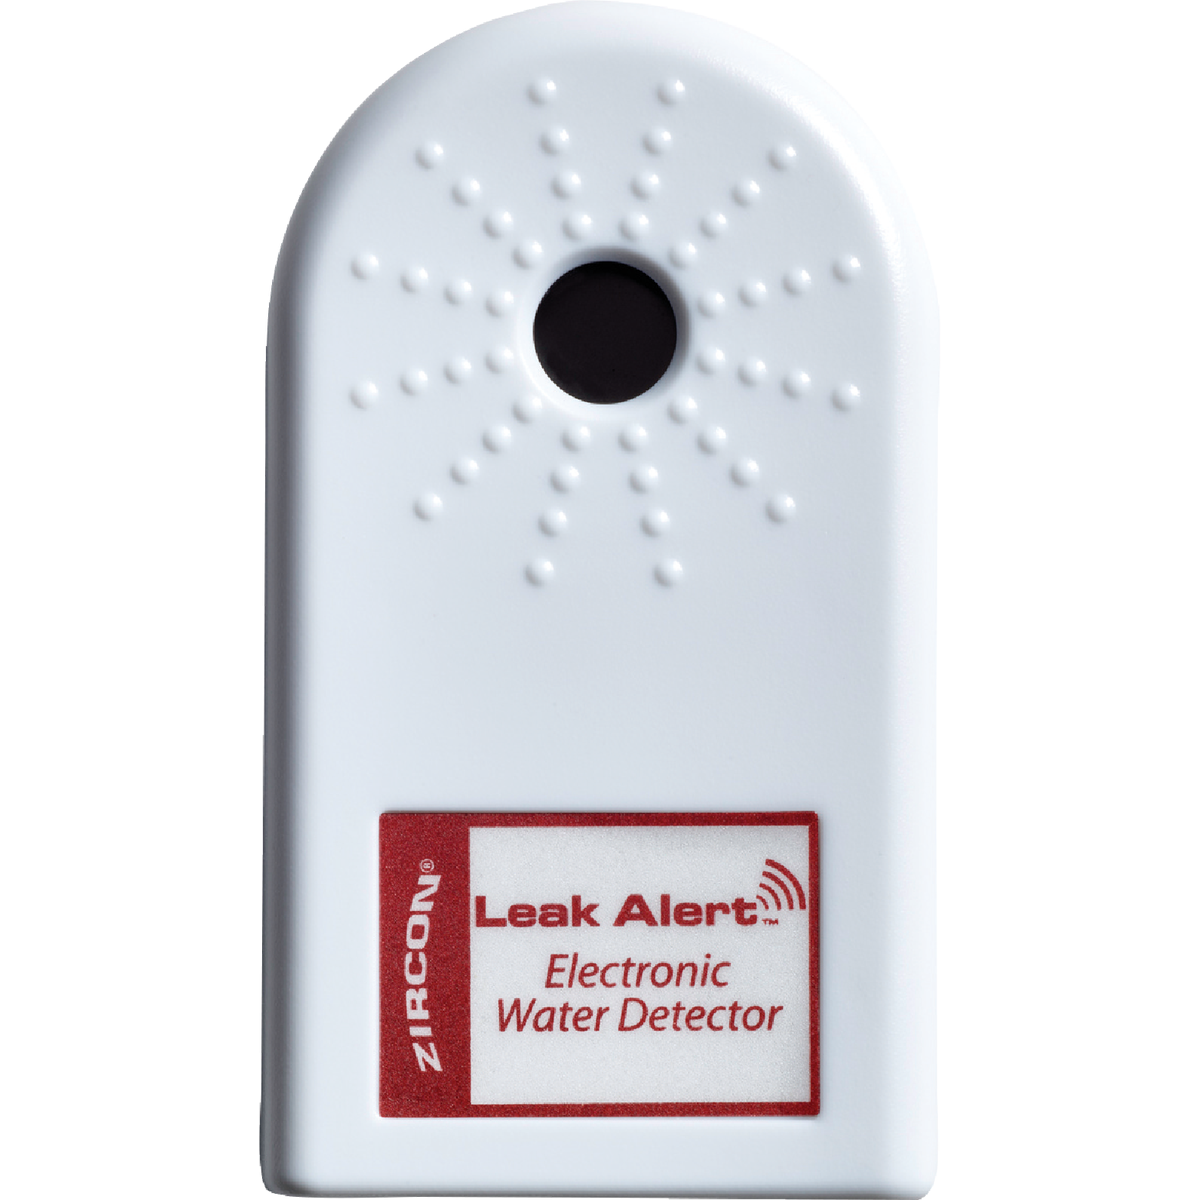 Water Detectors & Alarms